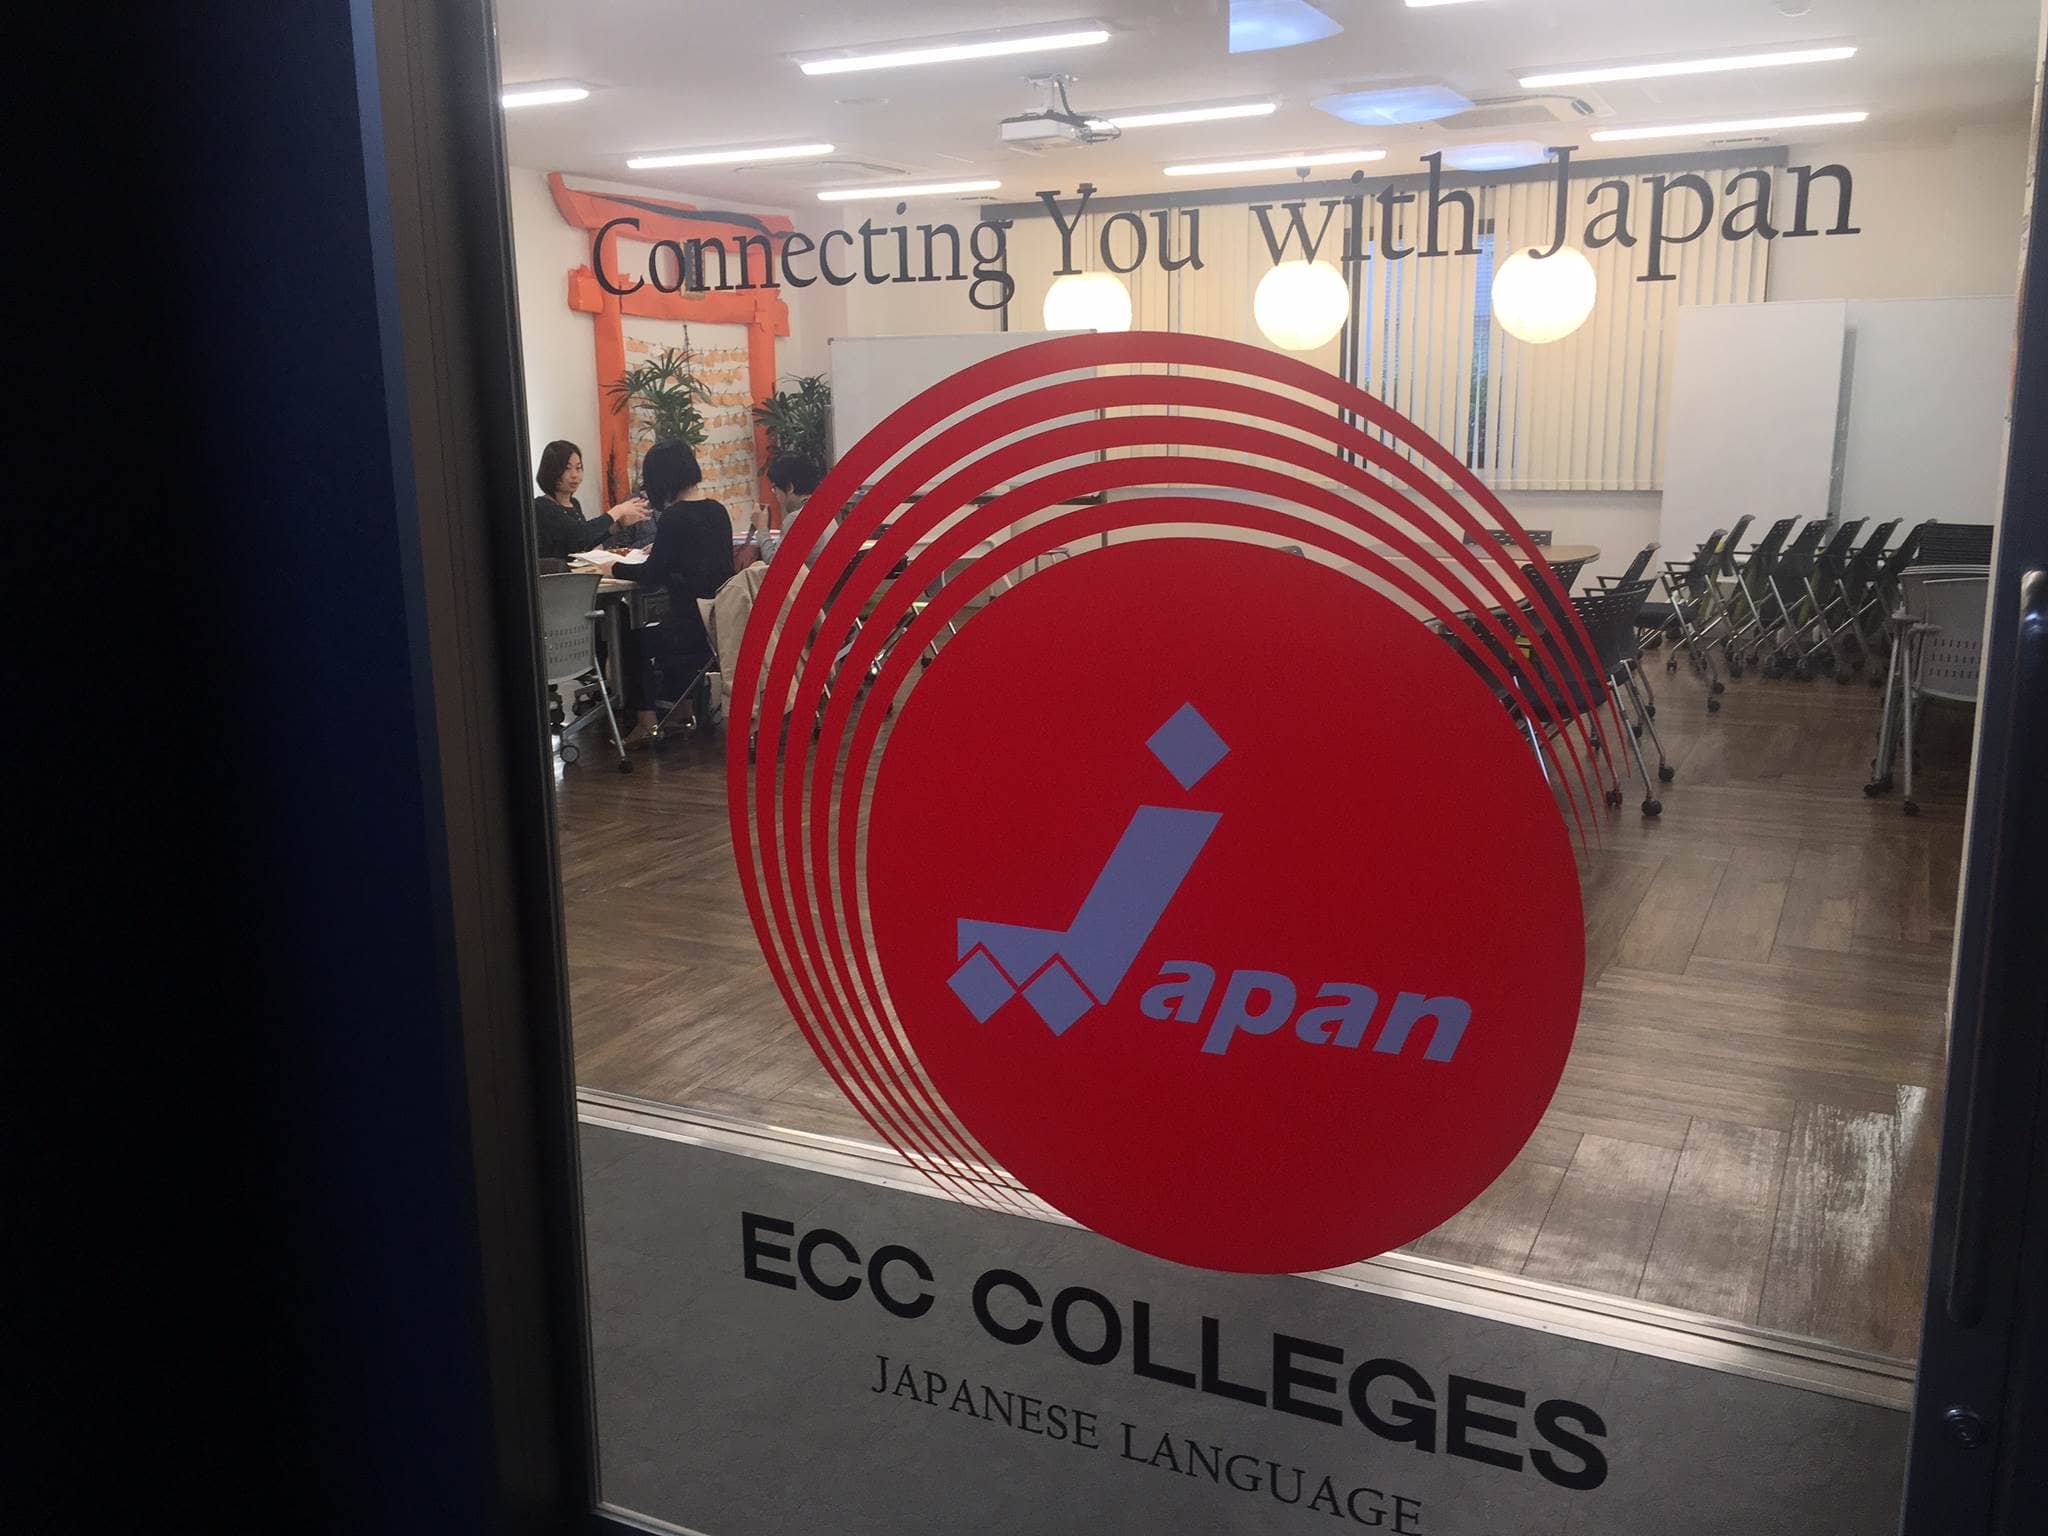 大阪 ECC College Group 專業課程